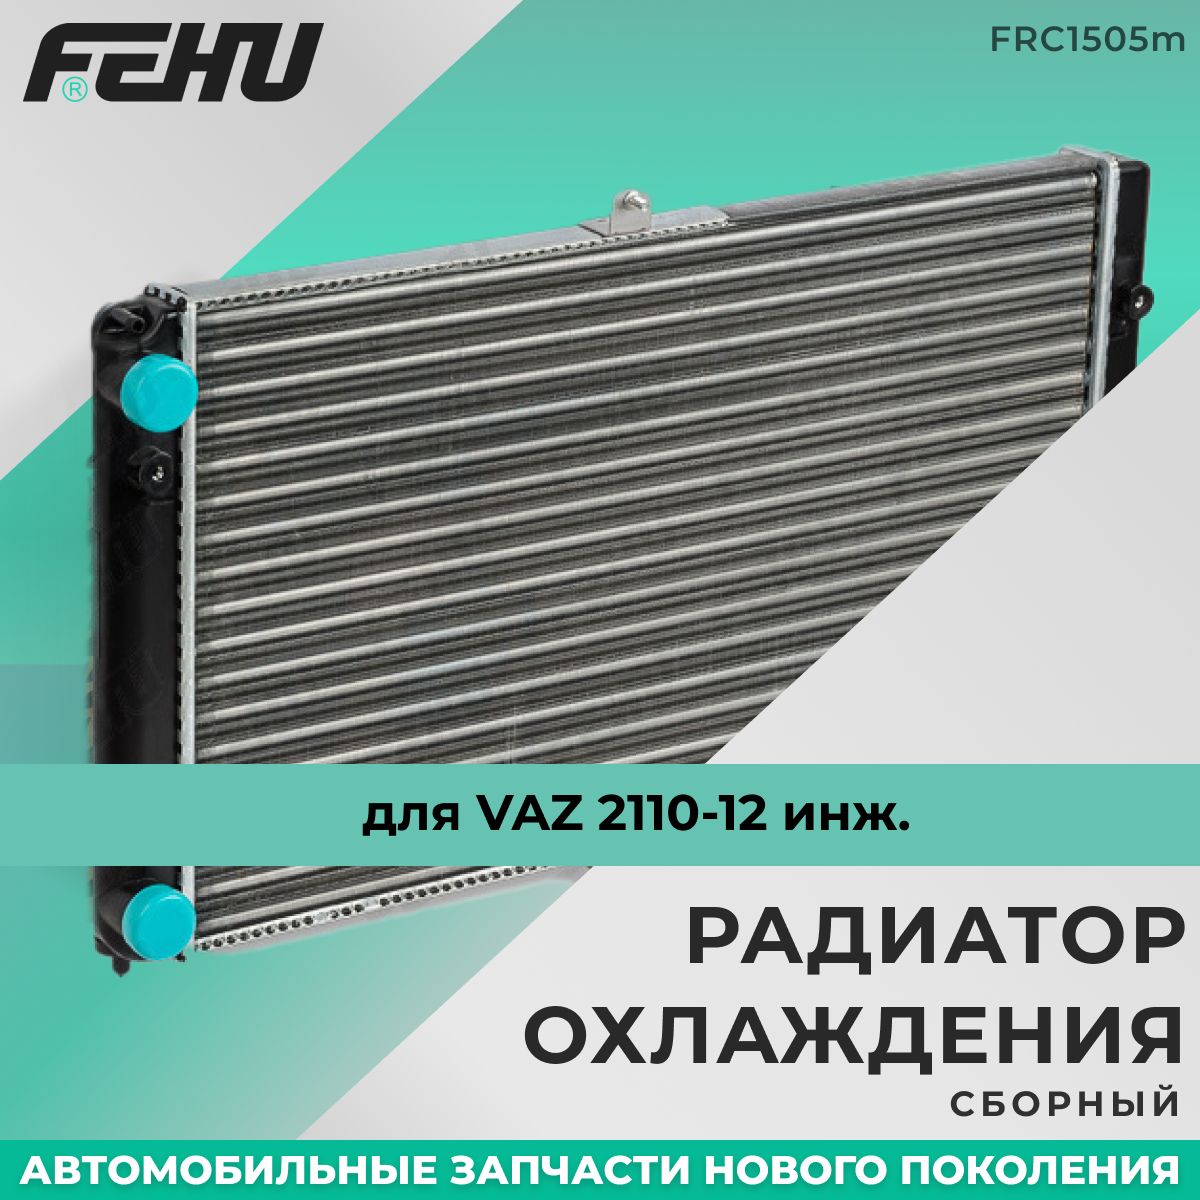 РадиаторохлажденияFEHU(ФЕХУ)сборныйVAZ2110-12инж.арт.2112130101210